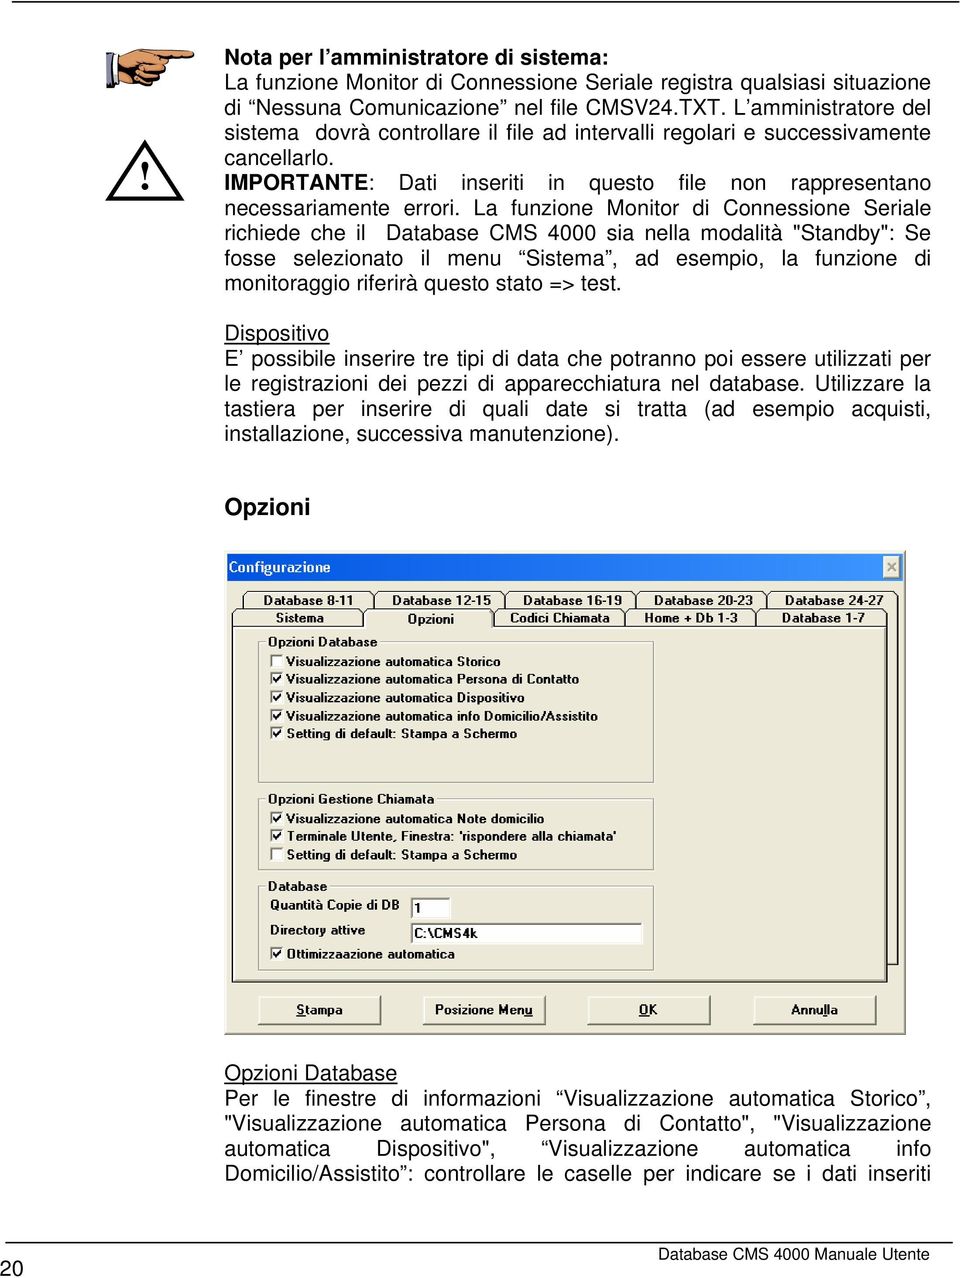 La funzione Monitor di Connessione Seriale richiede che il Database CMS 4000 sia nella modalità "Standby": Se fosse selezionato il menu Sistema, ad esempio, la funzione di monitoraggio riferirà